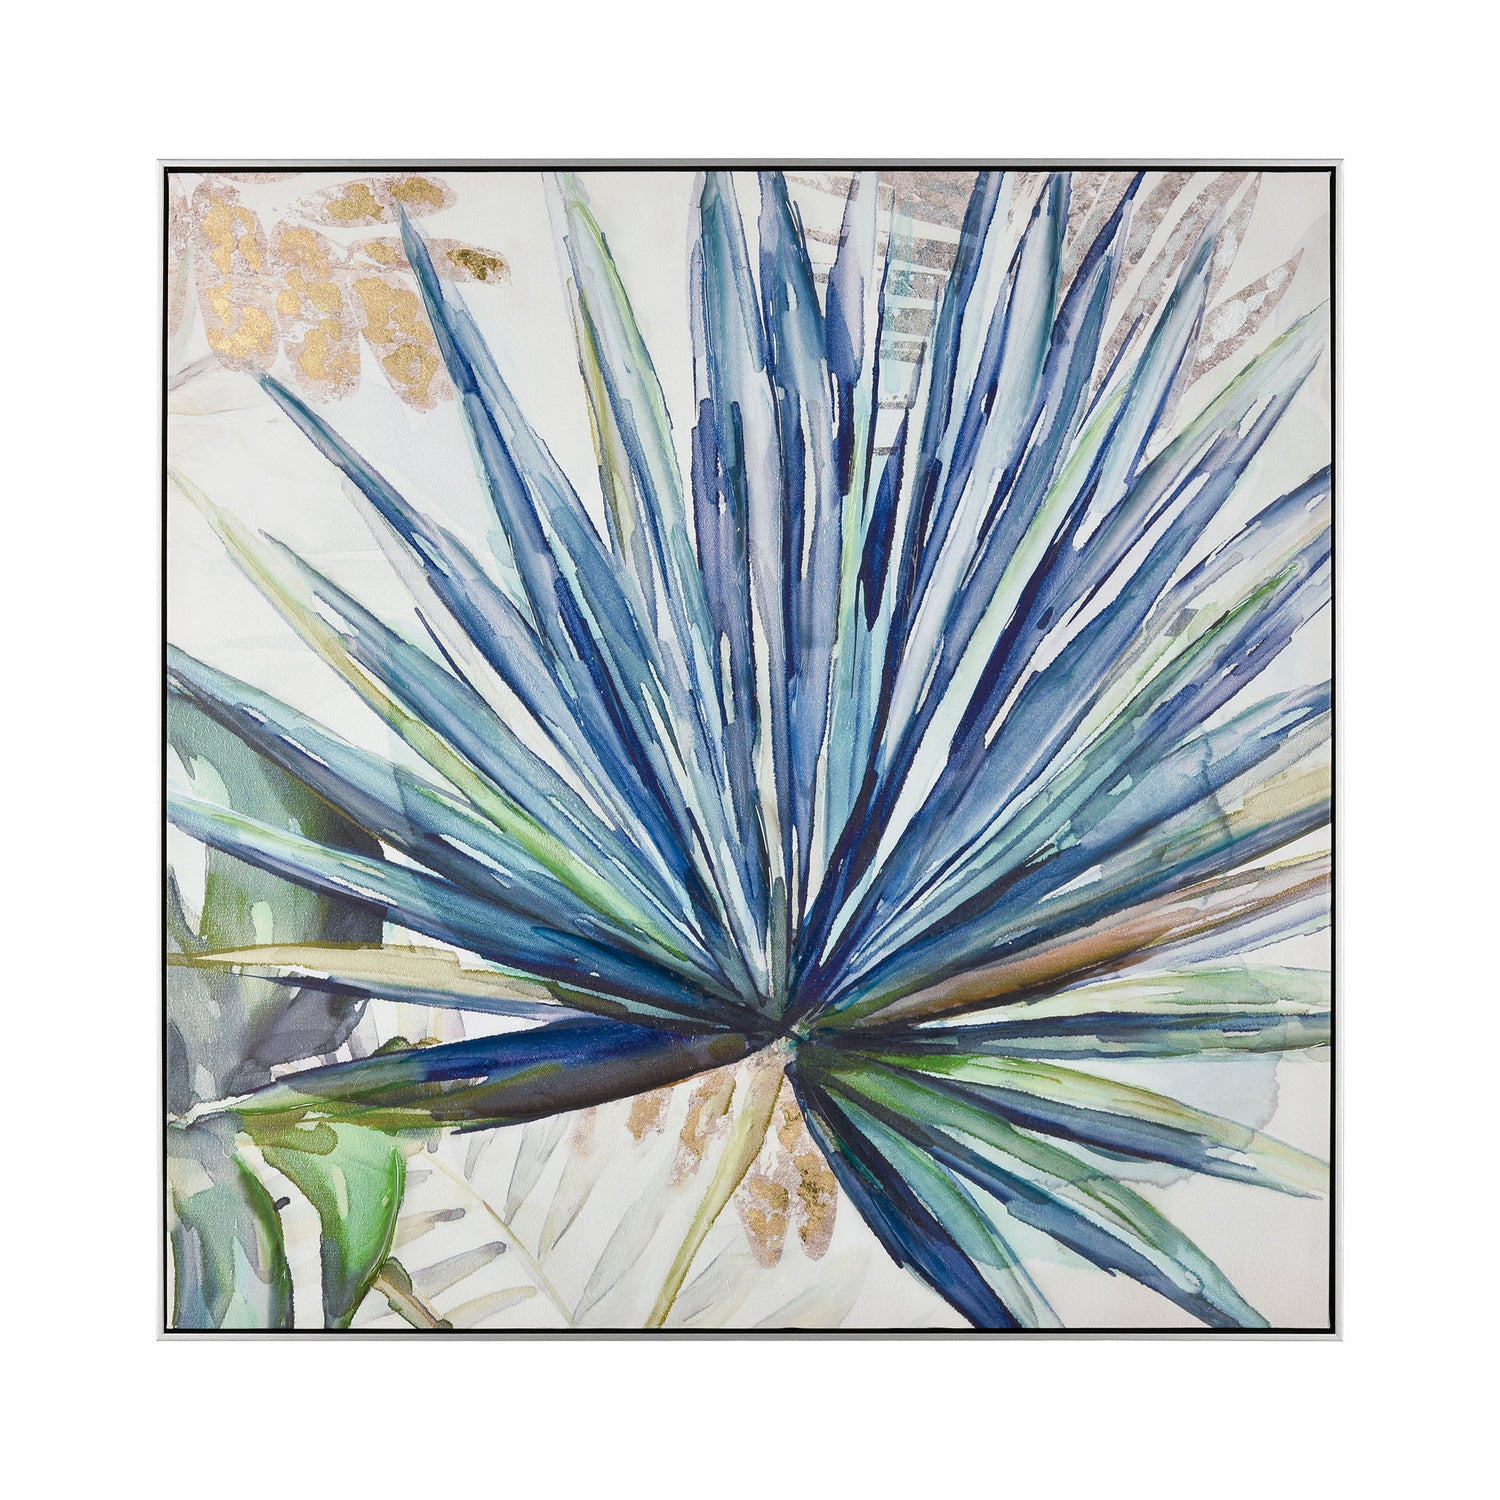 ELK Home - S0016-8160 - Wall Art - Garden Palm - Blue